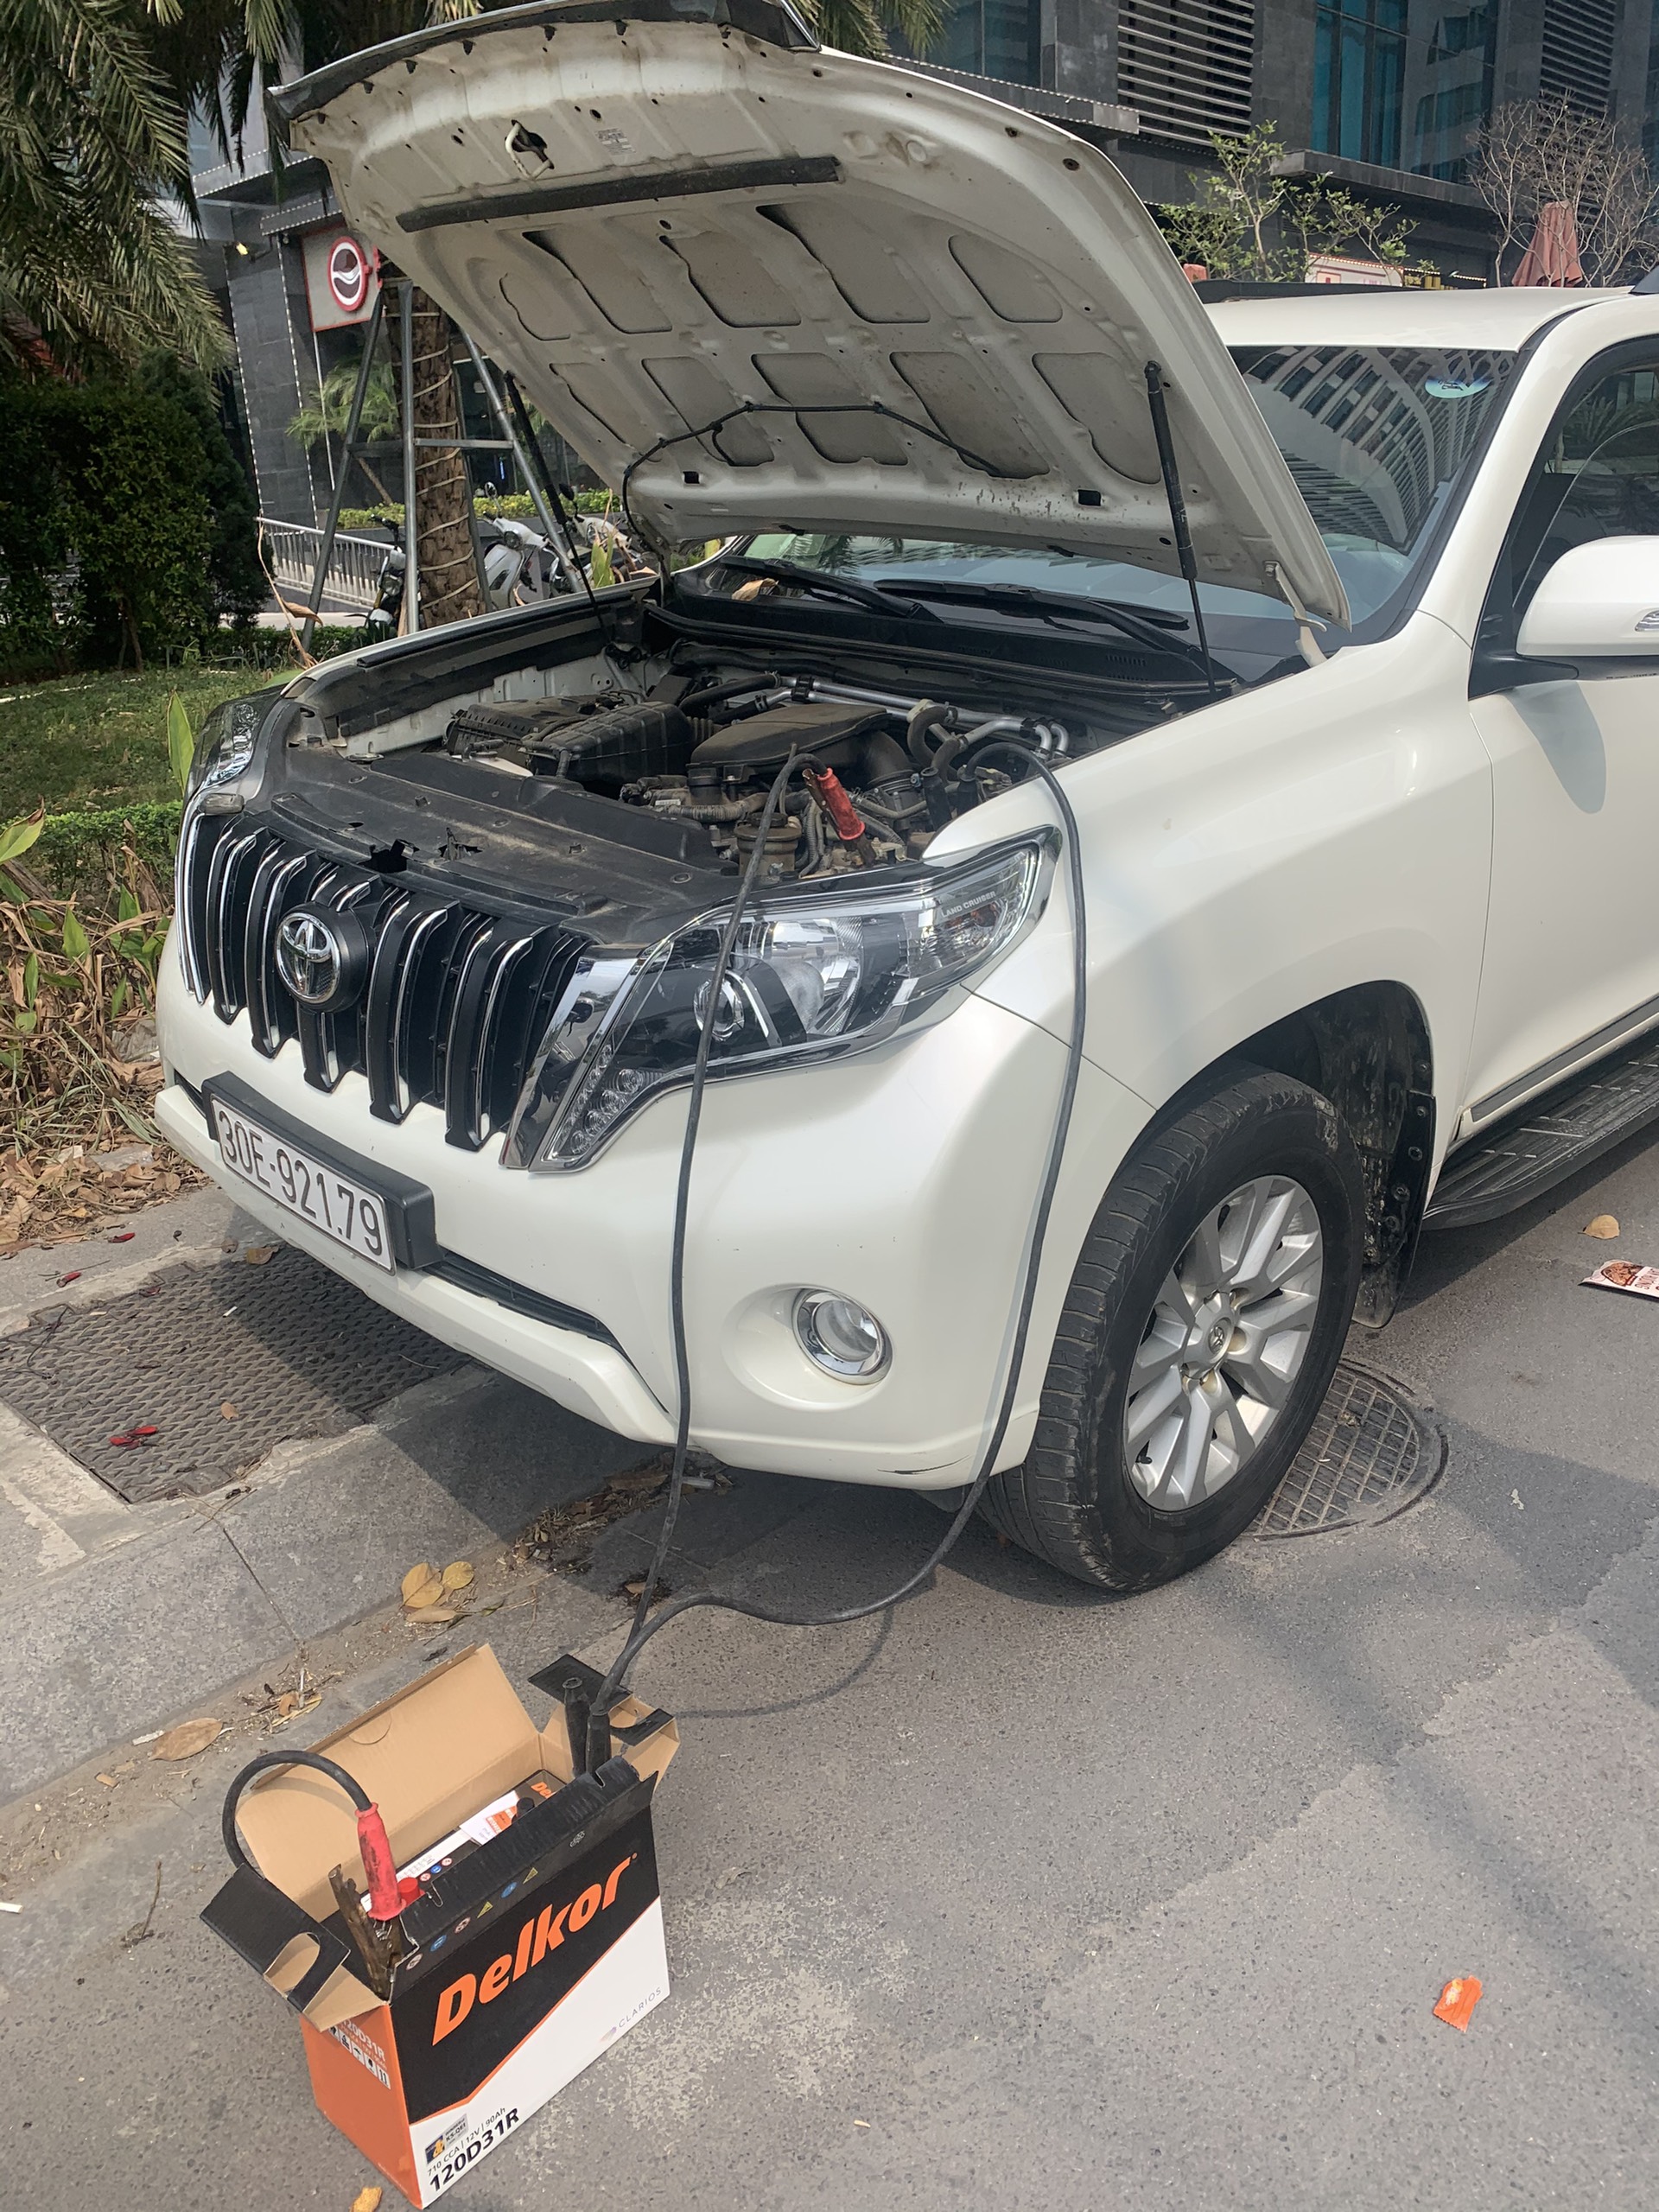 Cứu hộ câu Kích sạc thay bình ắc quy ô tô tại Quận Thanh Xuân Hà Nội